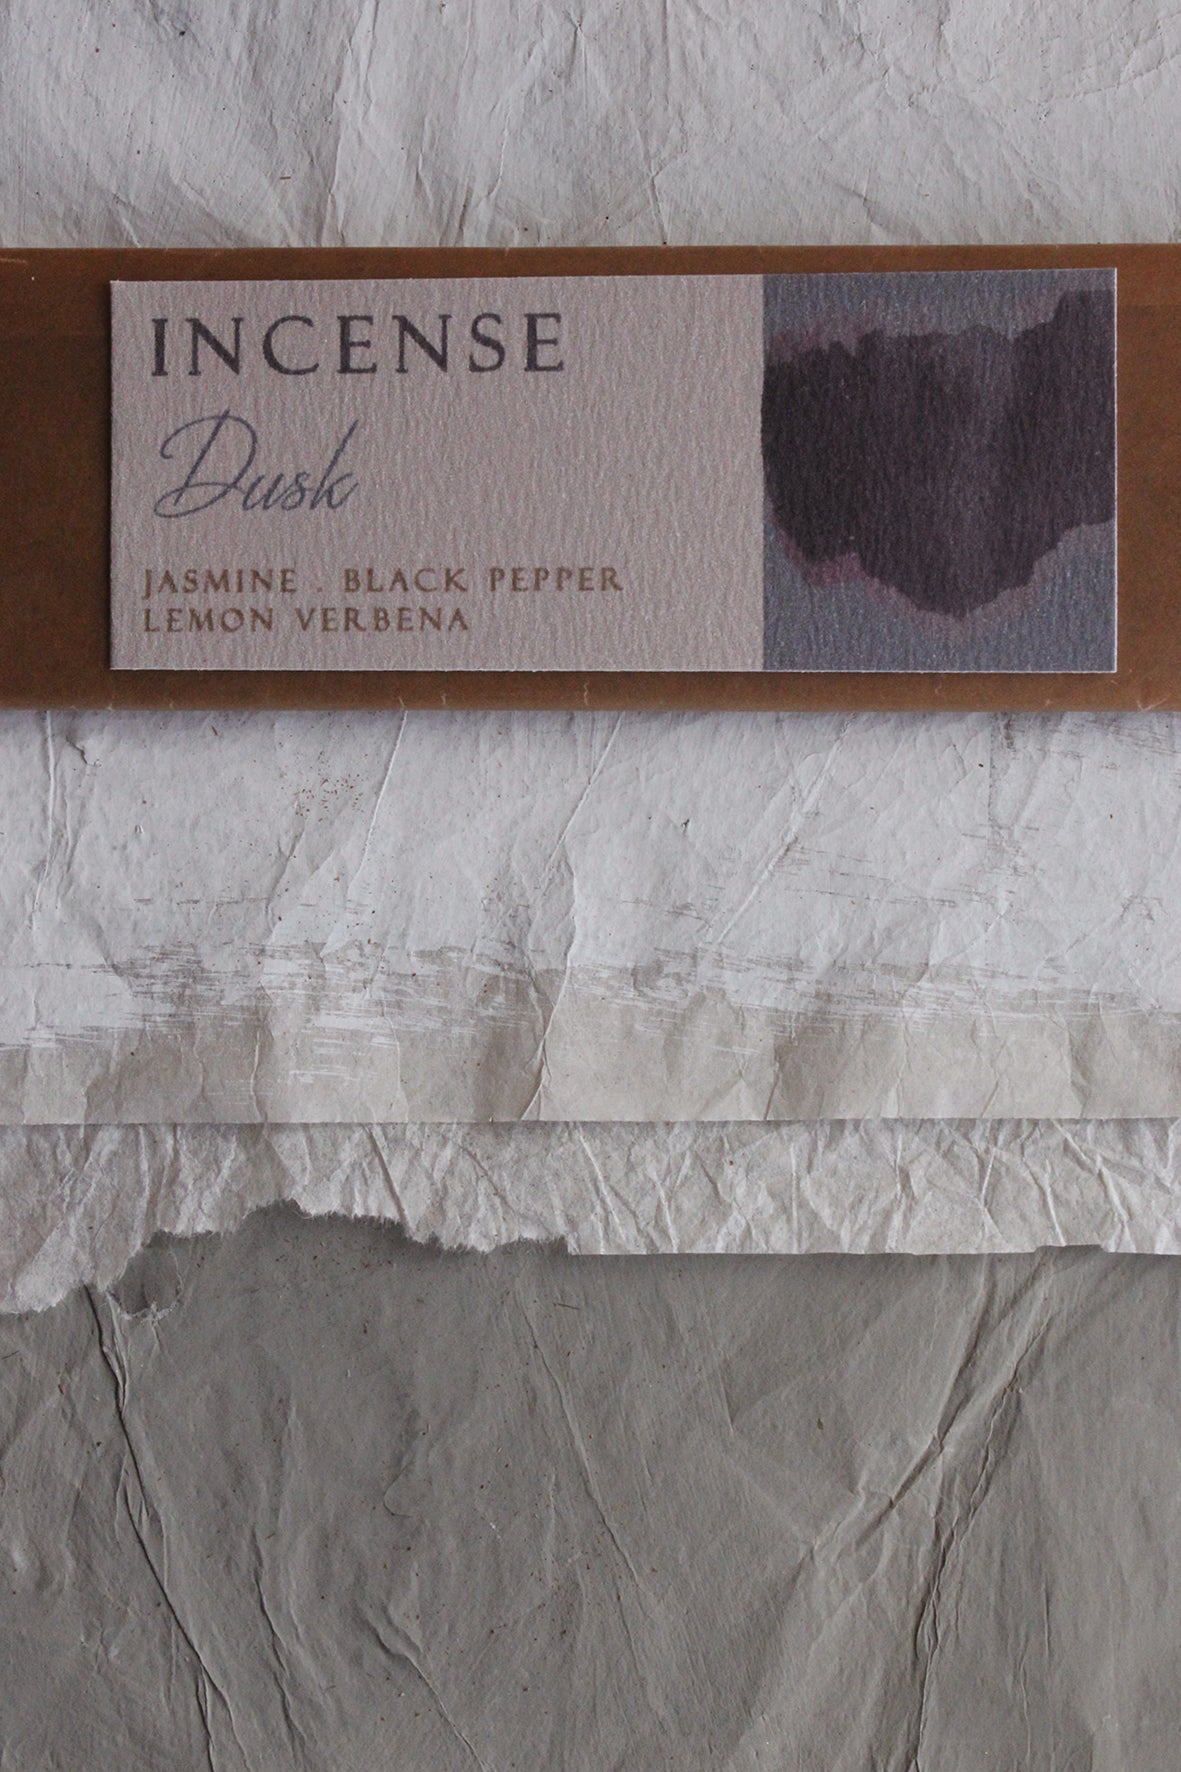 Incense - "Dusk"